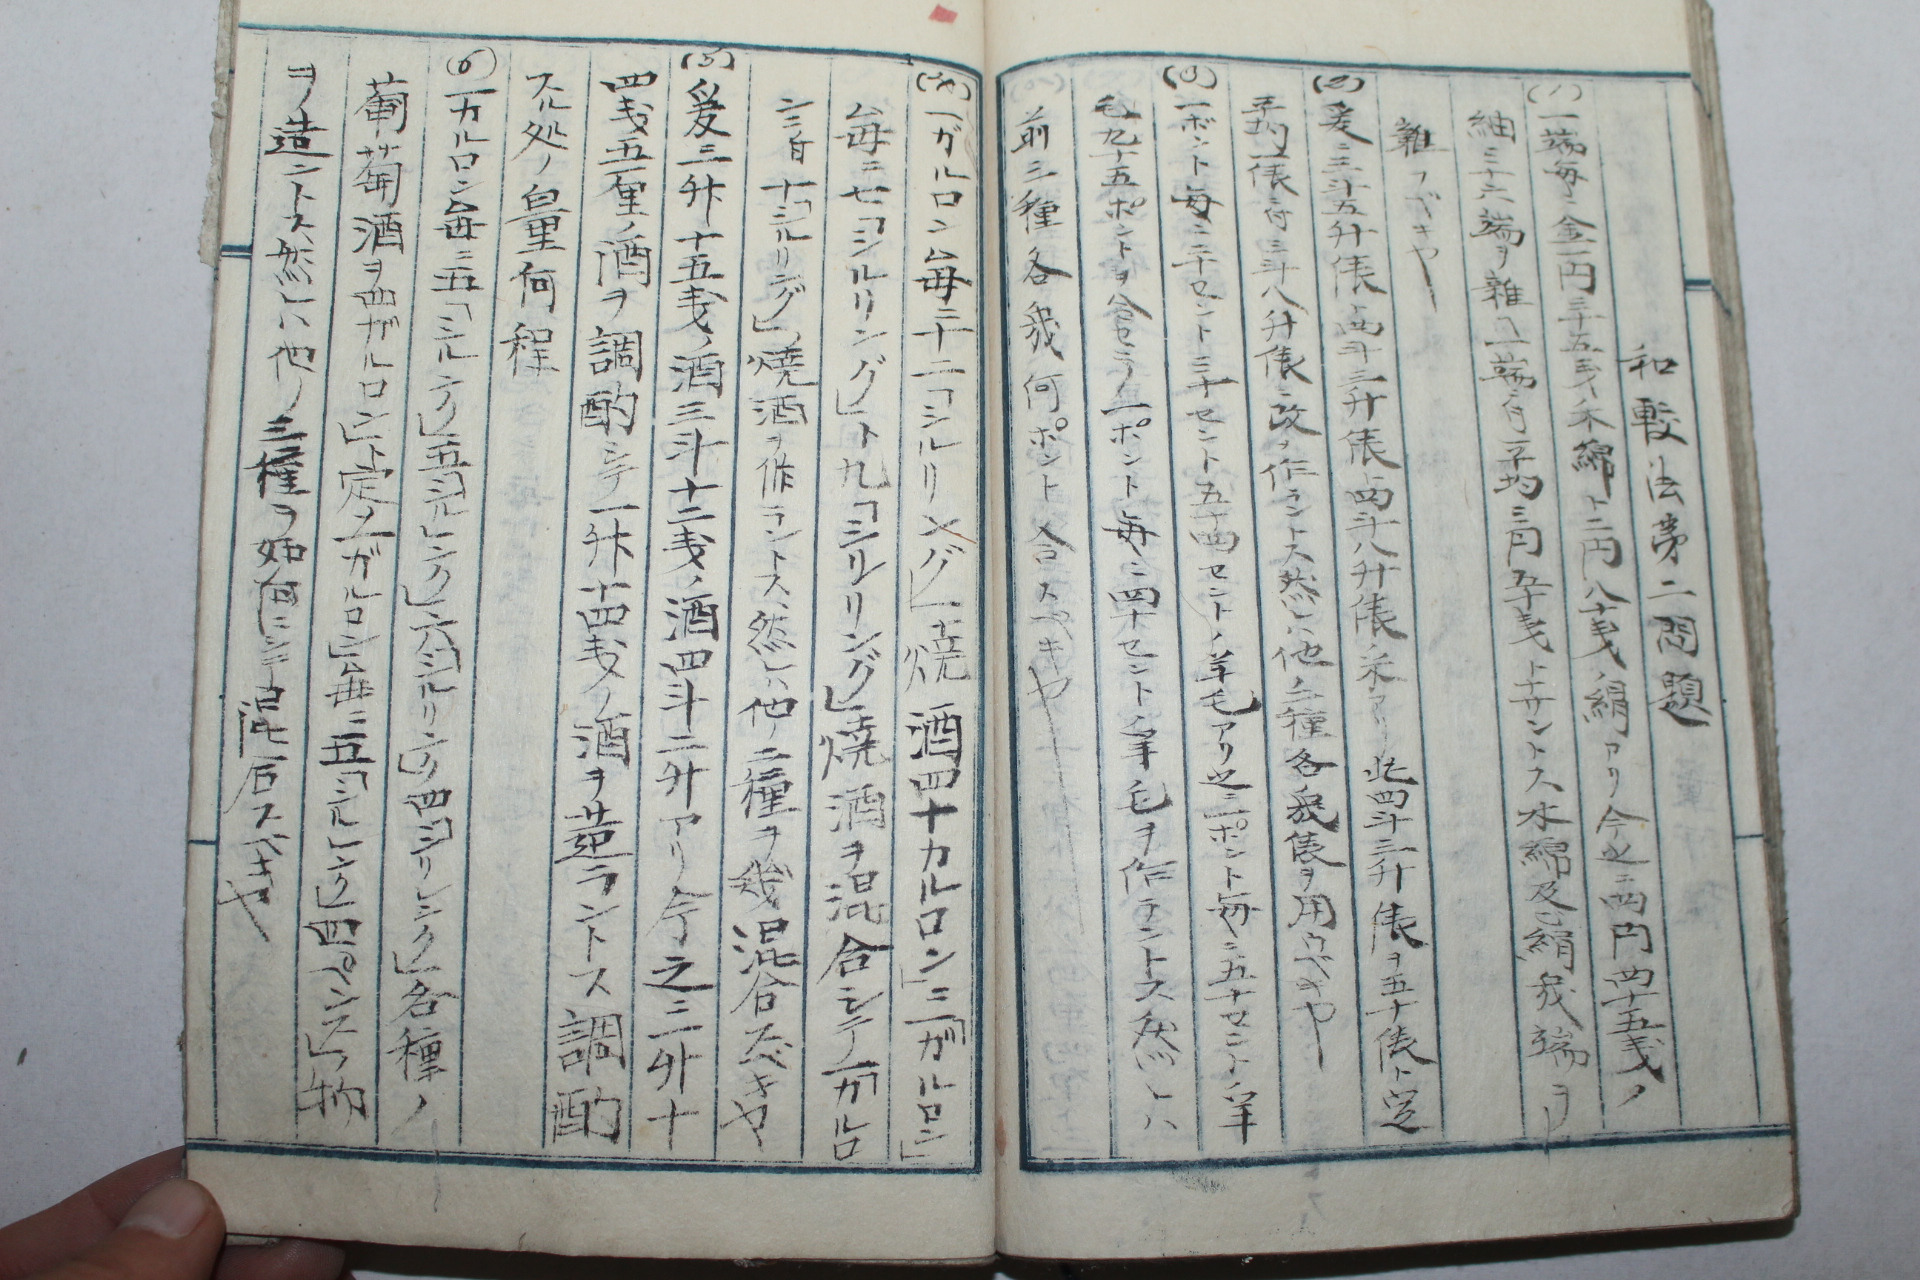 에도시기 일본필사본 소학필산교수본(小學筆算敎授本) 1책